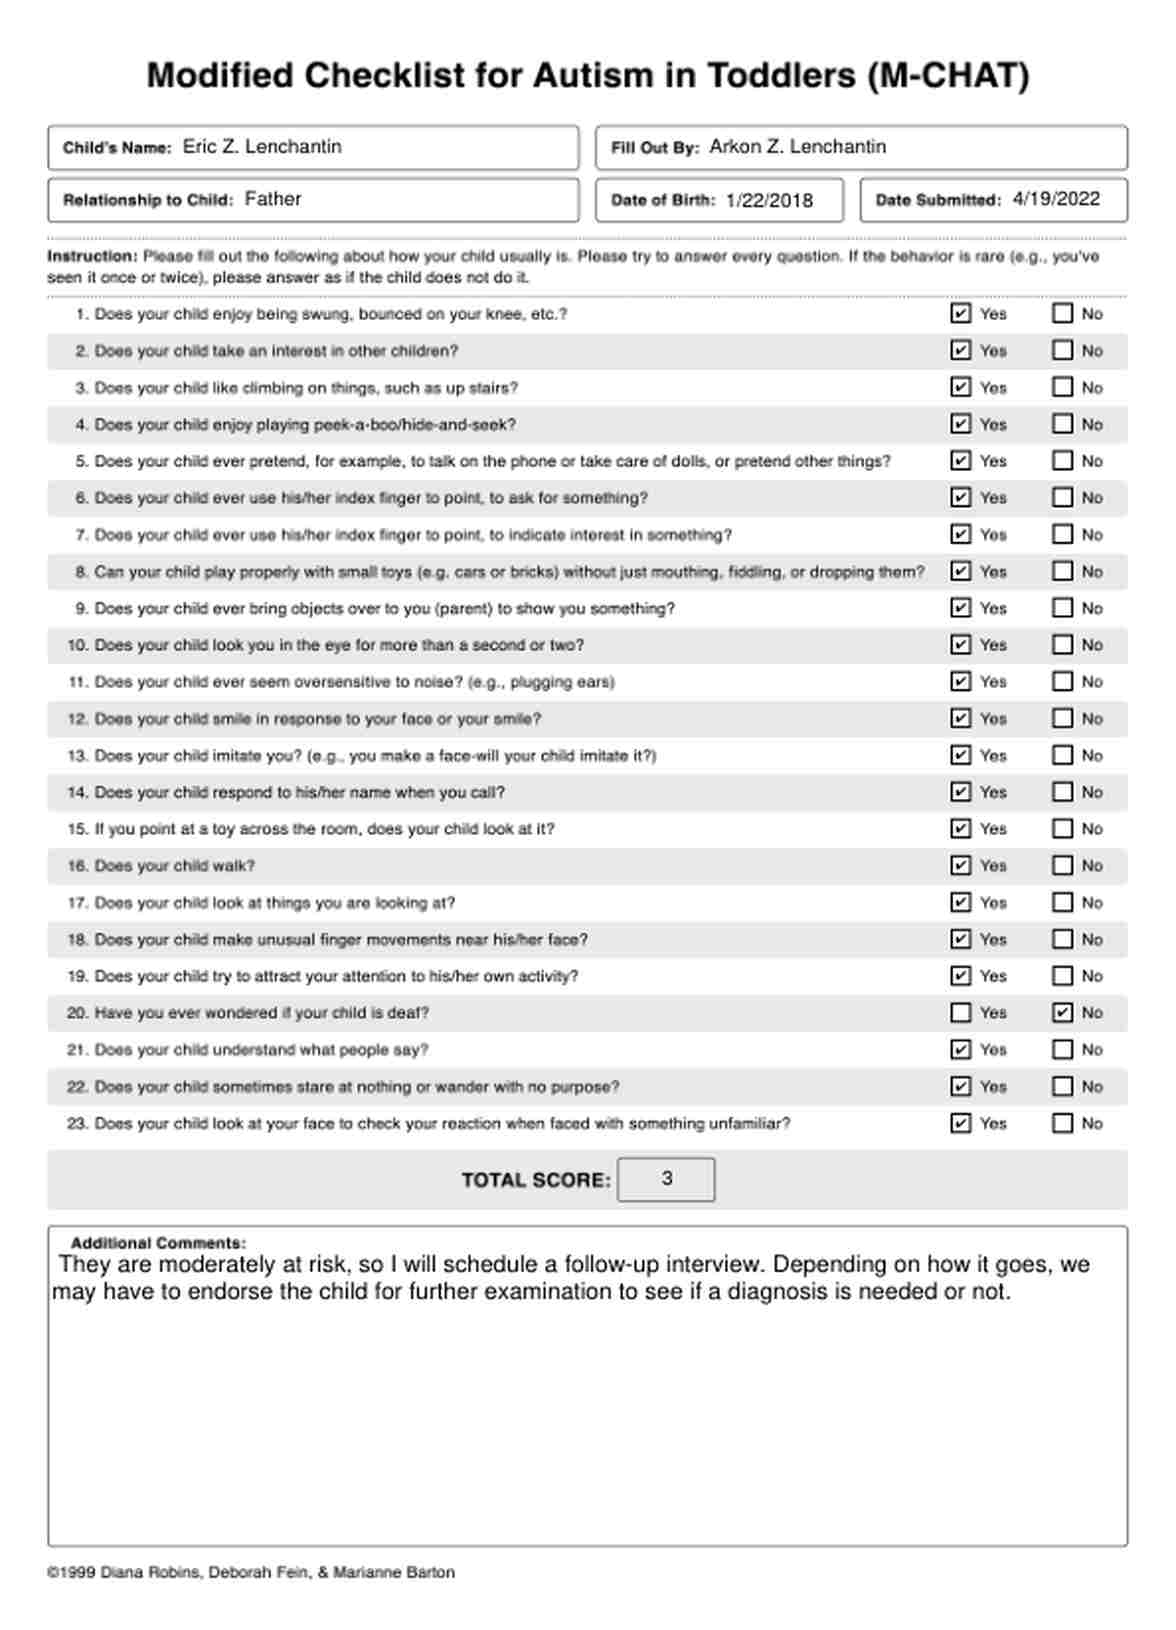 Checklist Modificada para Autismo en niños (M-CHAT) PDF Example